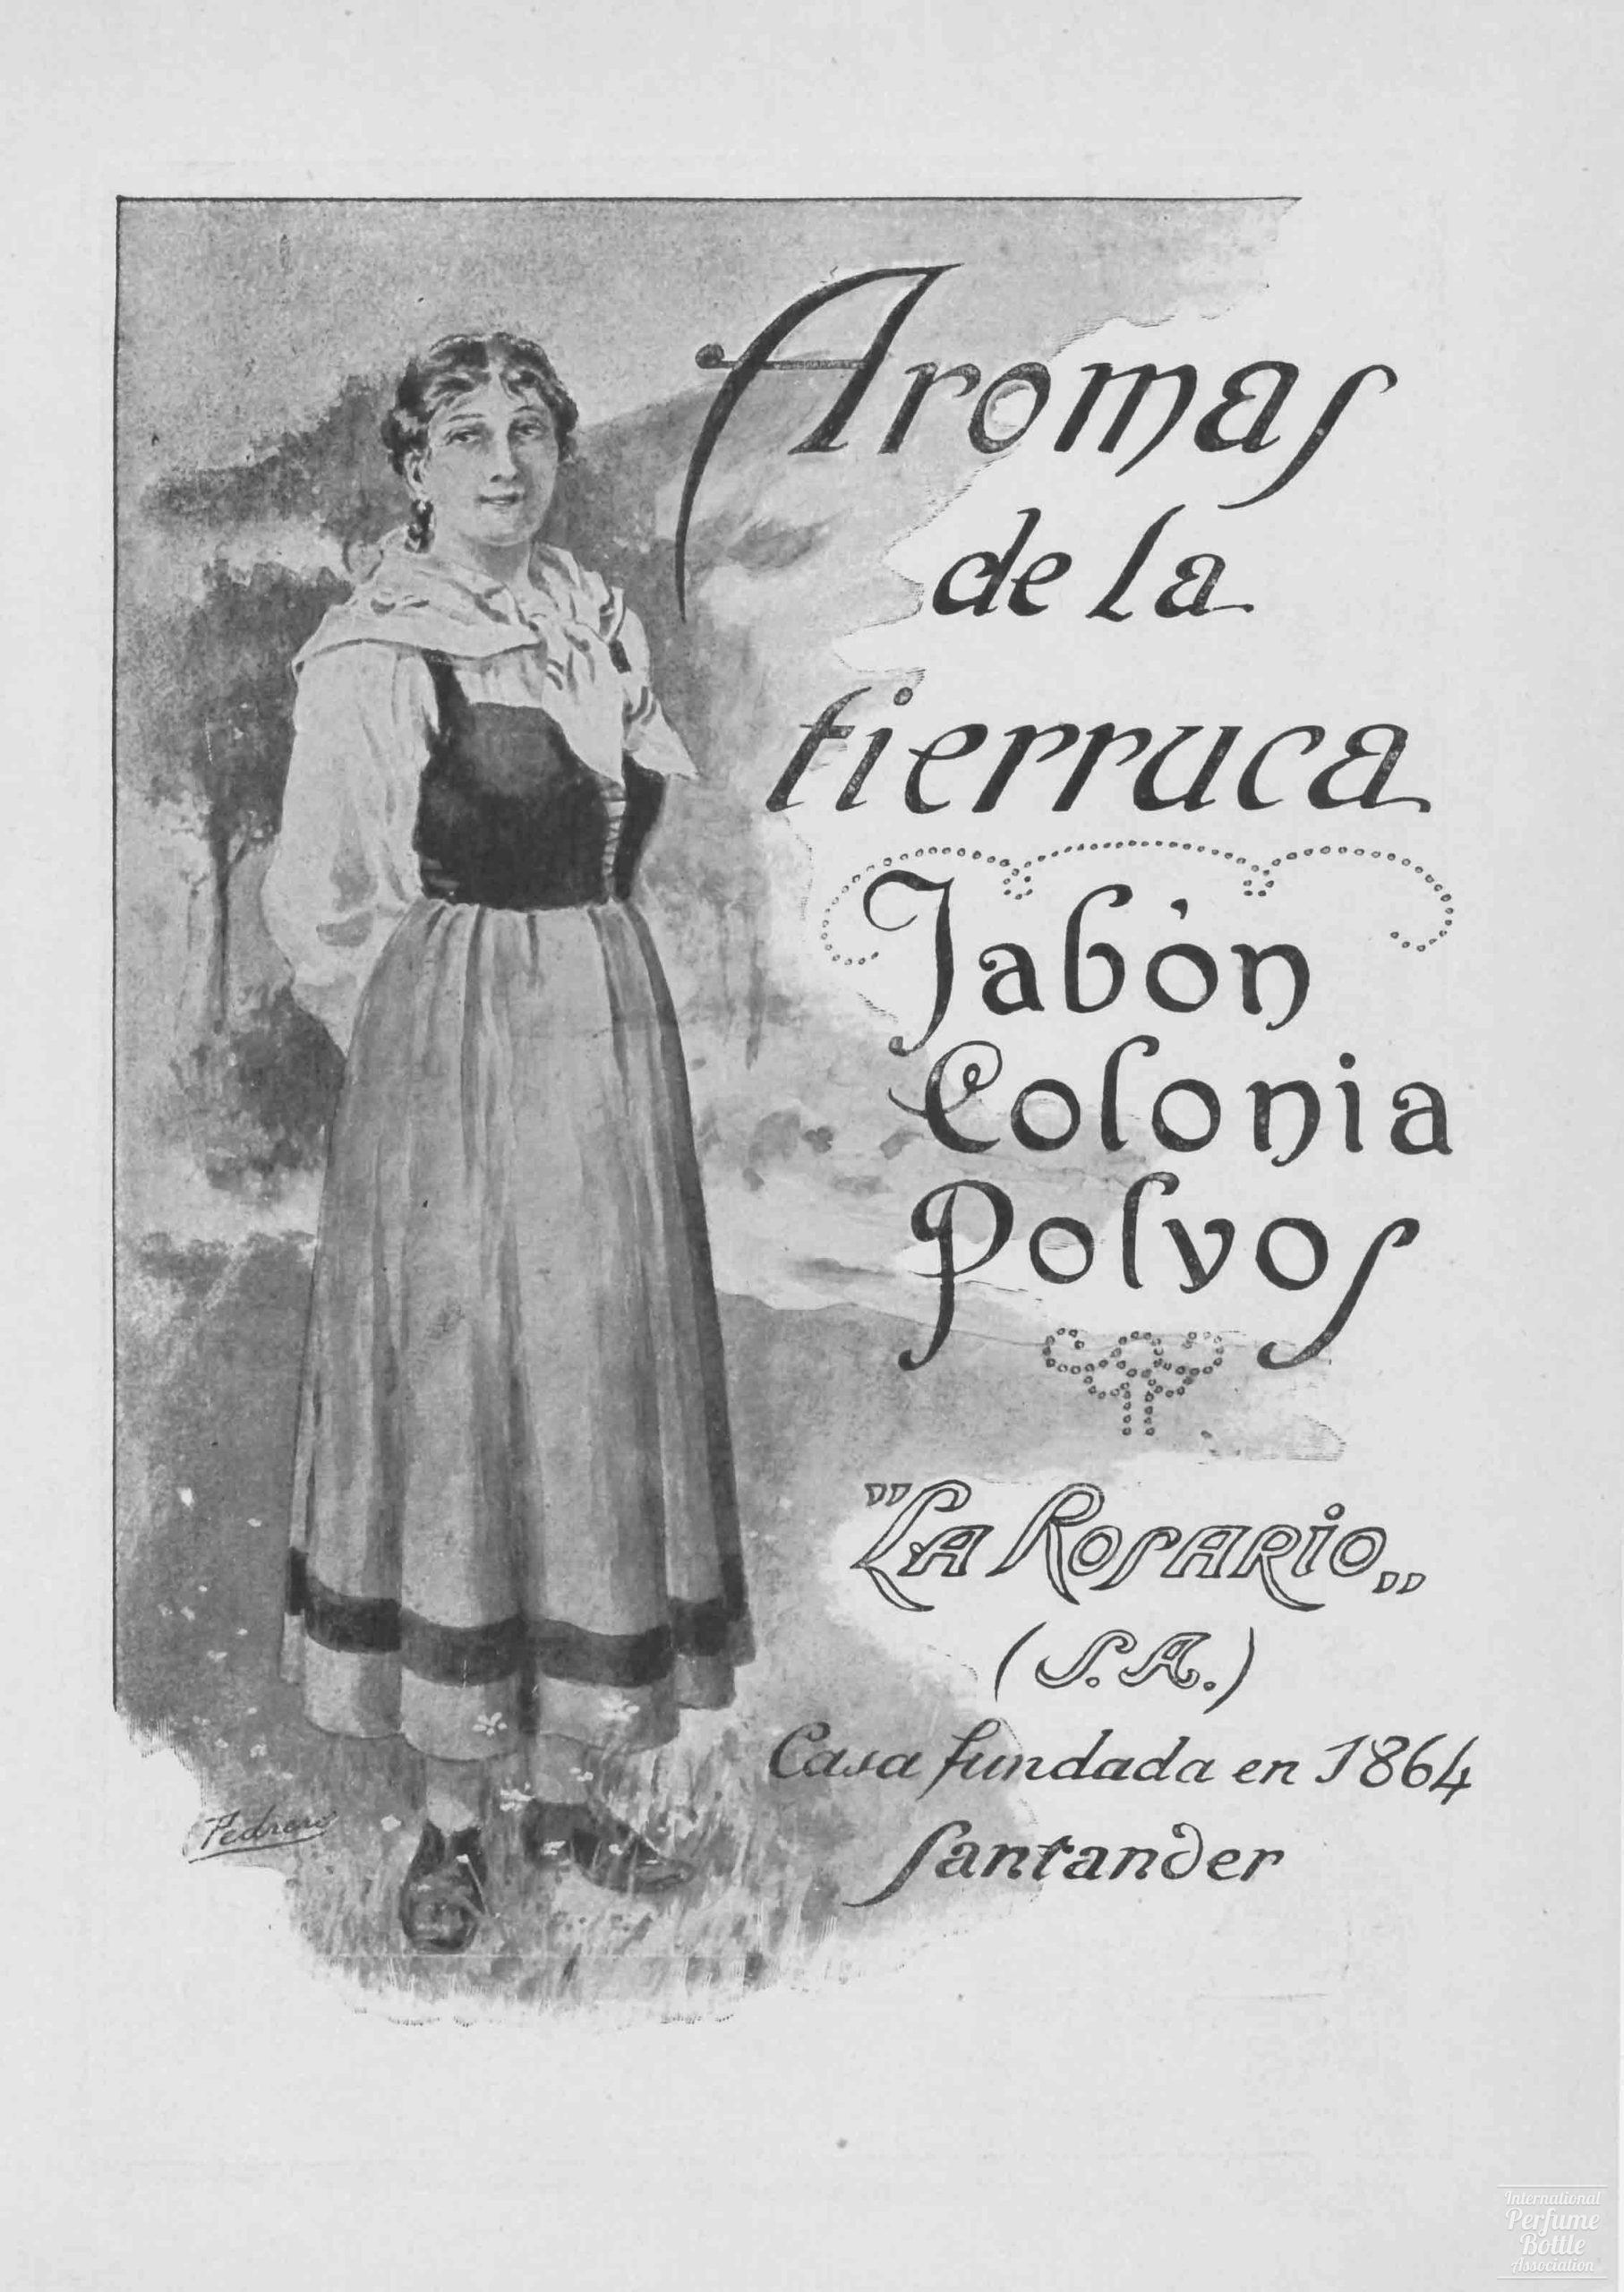 "Aromas de la Tierruca" by La Rosario Advertisement - 1924